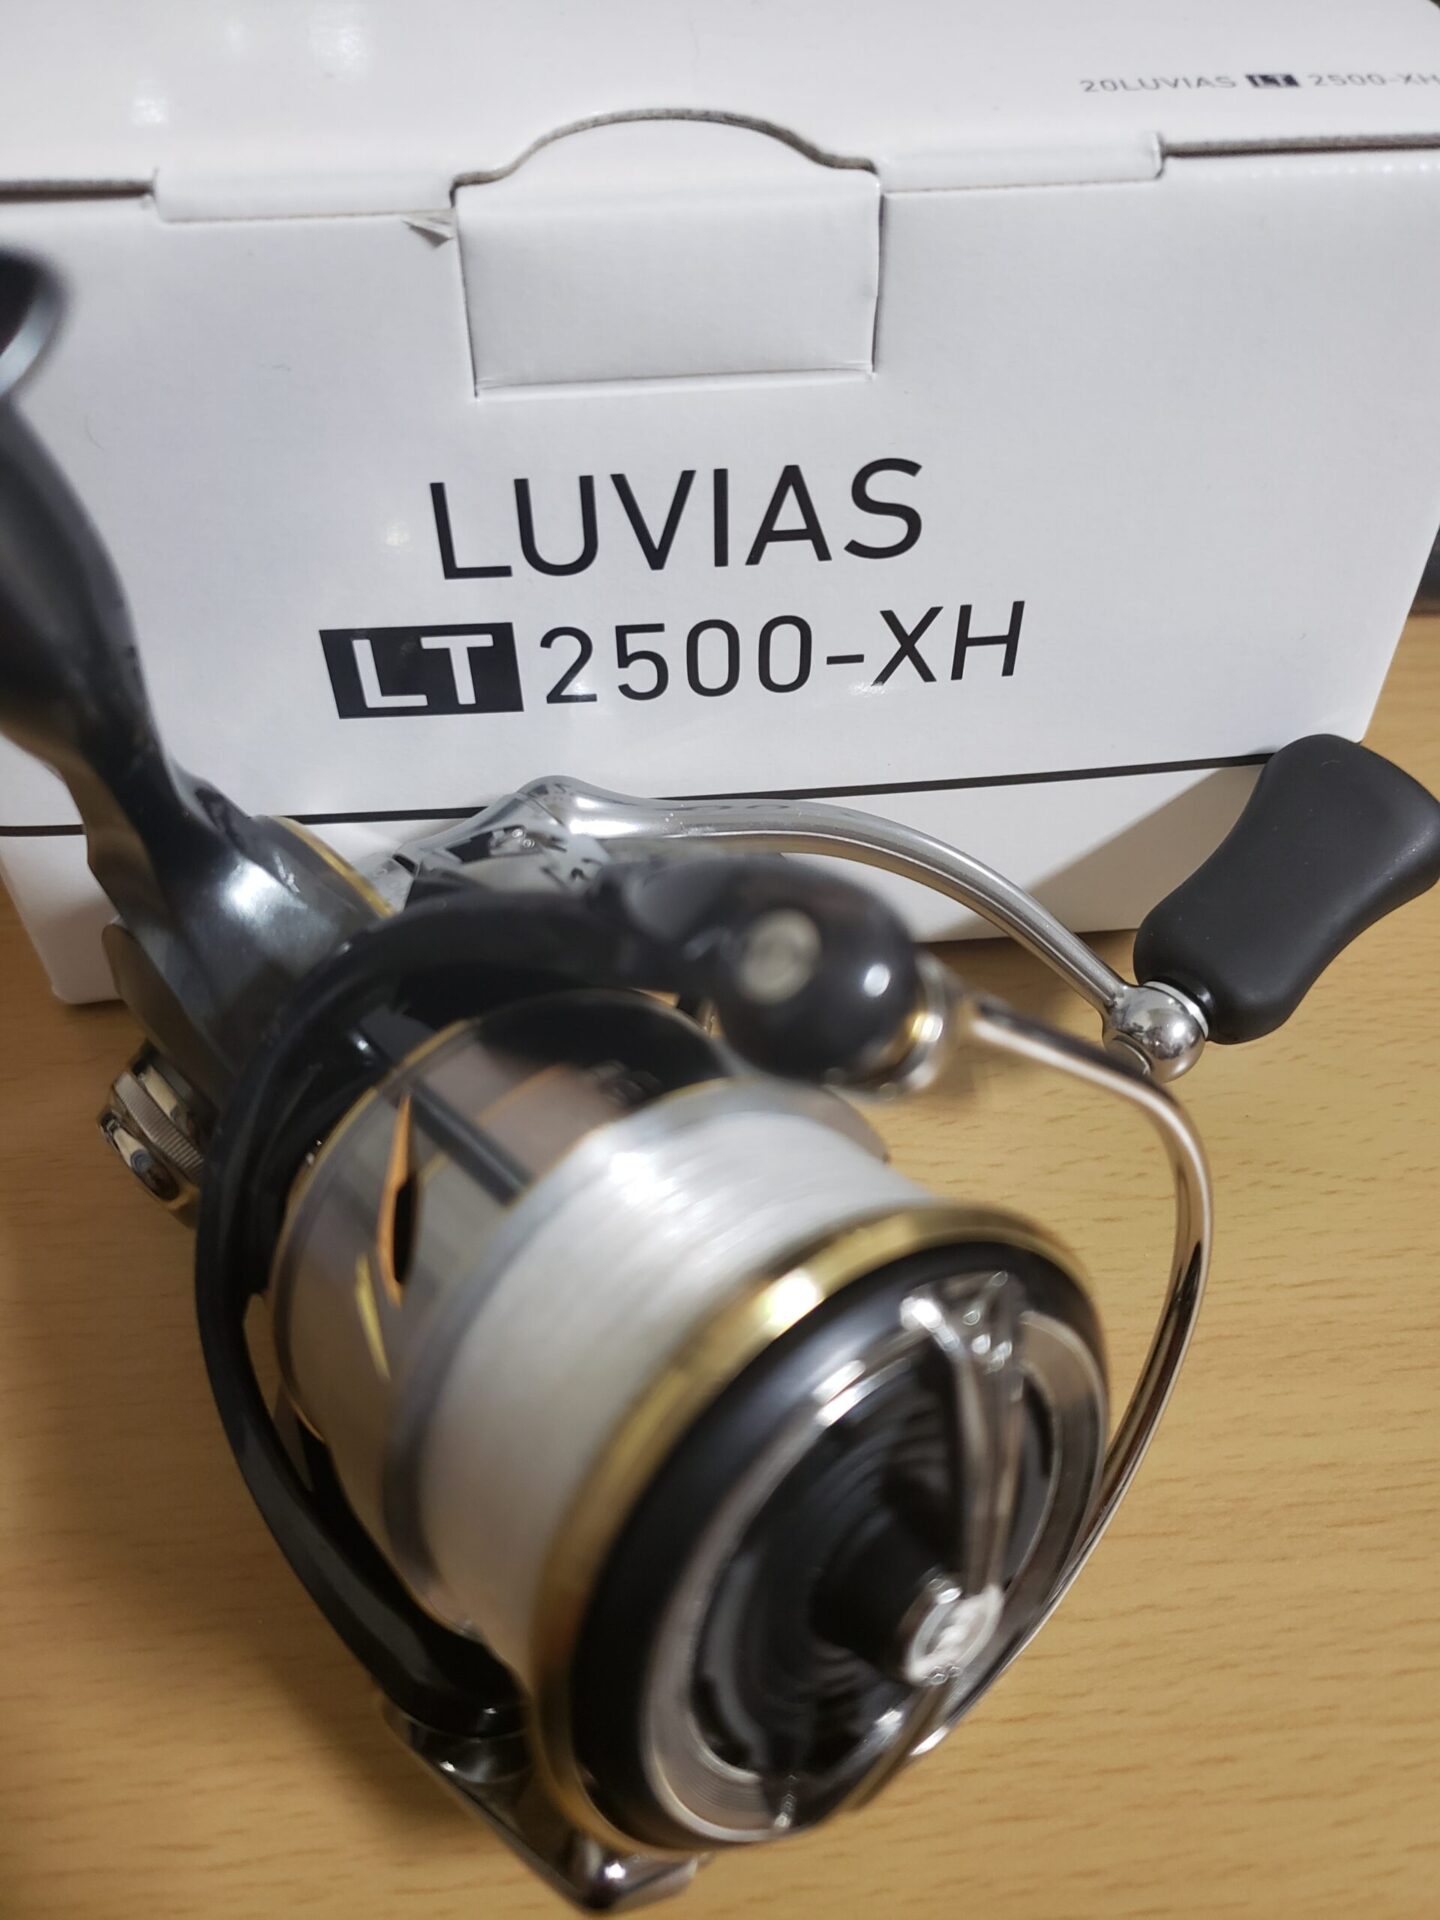 ルビアスLT2500-XHをエリアトラウトで使用したインプレ - ビボロク 